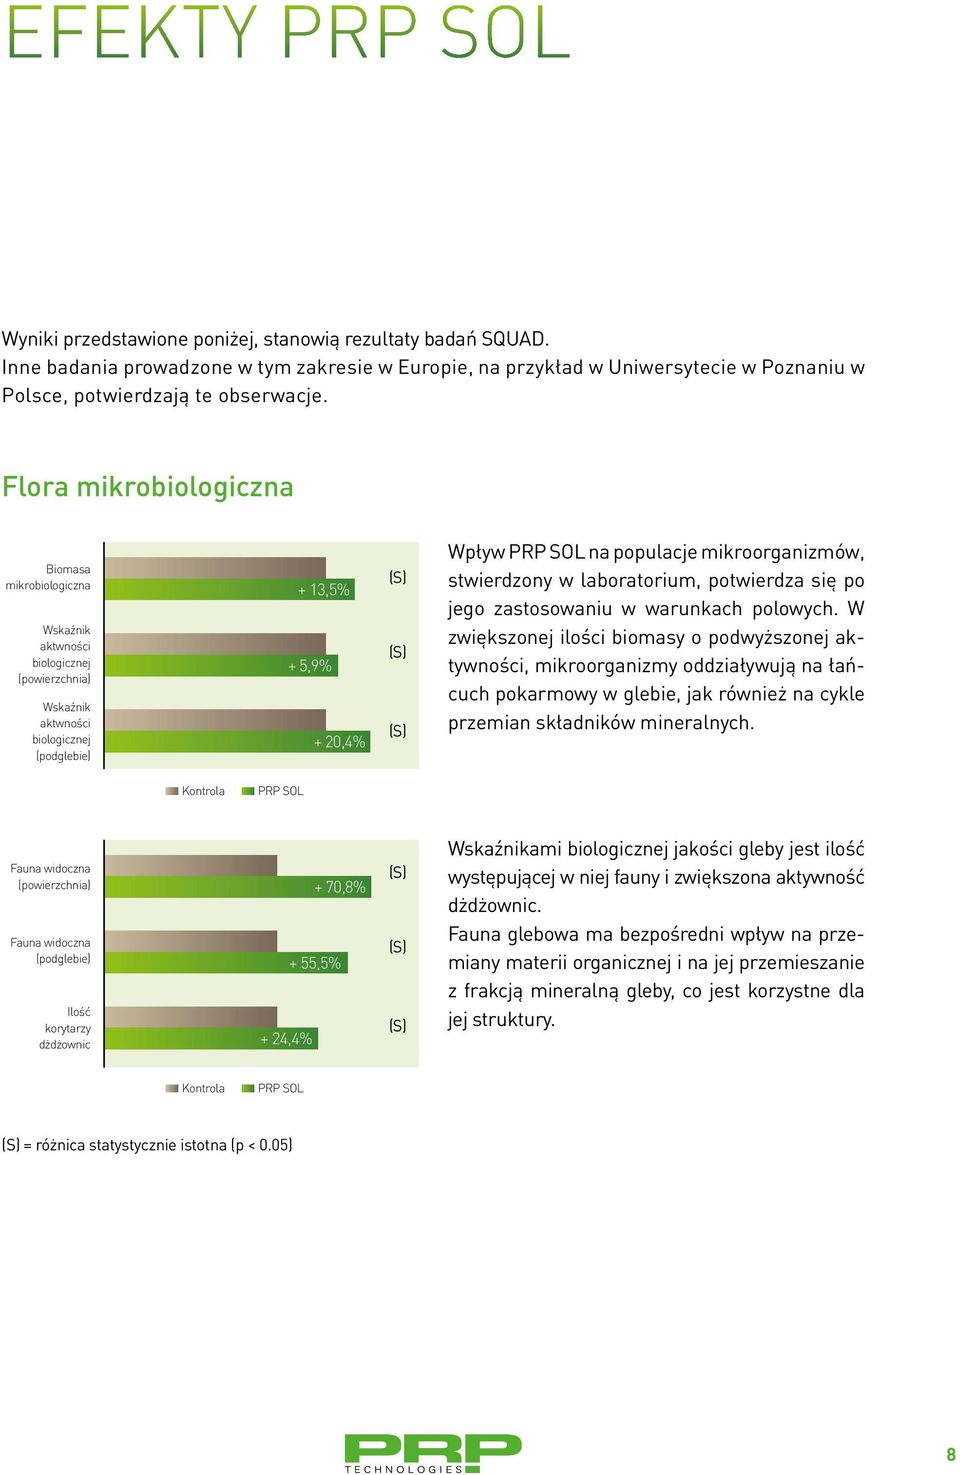 Flora mikrobiologiczna Biomasa mikrobiologiczna Wskaźnik aktwności biologicznej (powierzchnia) Wskaźnik aktwności biologicznej (podglebie) + 13,5% + 5,9% + 20,4% Wpływ PRP SOL na populacje